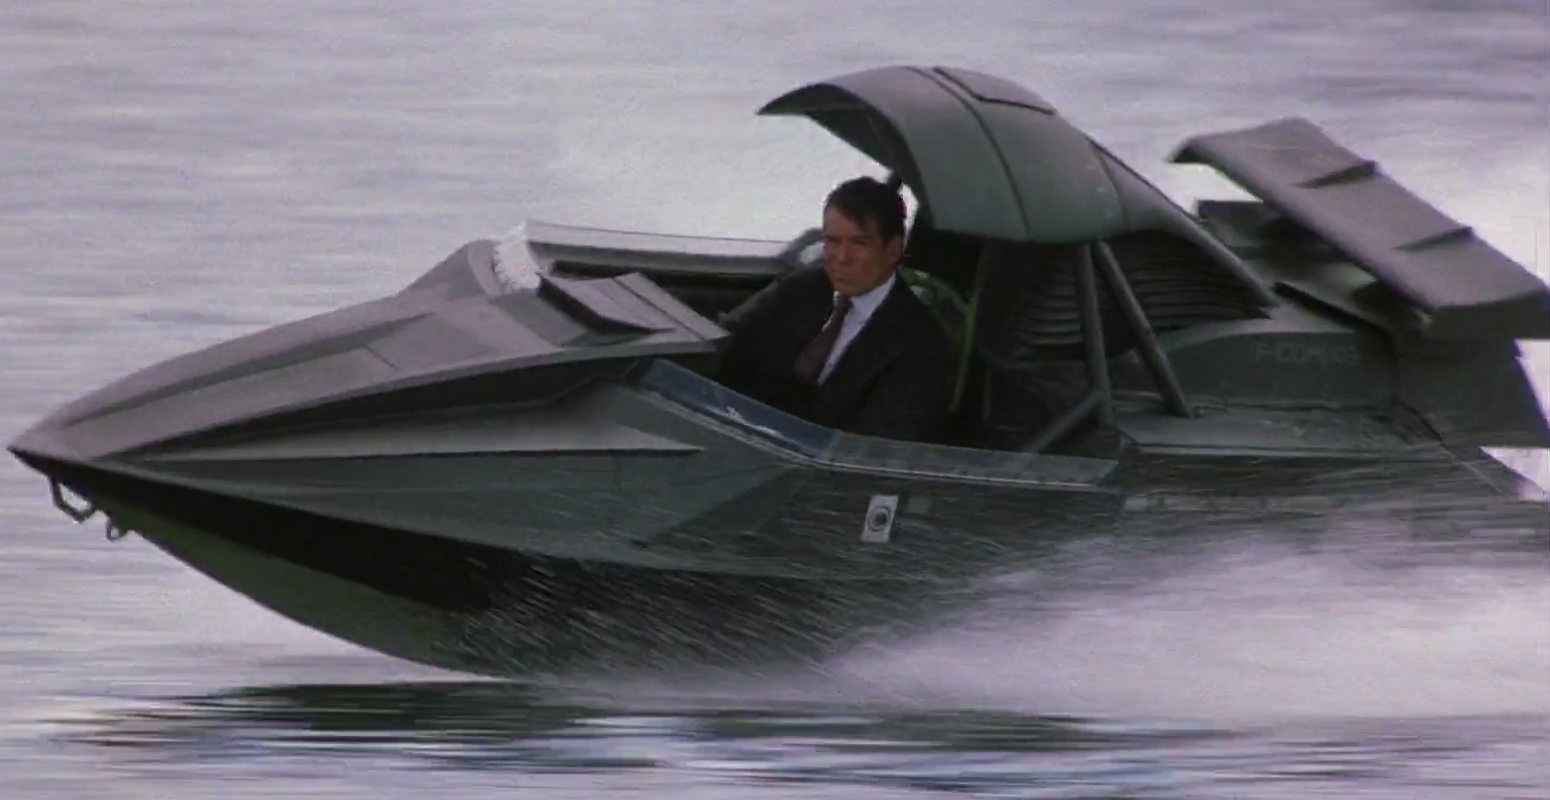 model of boat in the movie spy in black